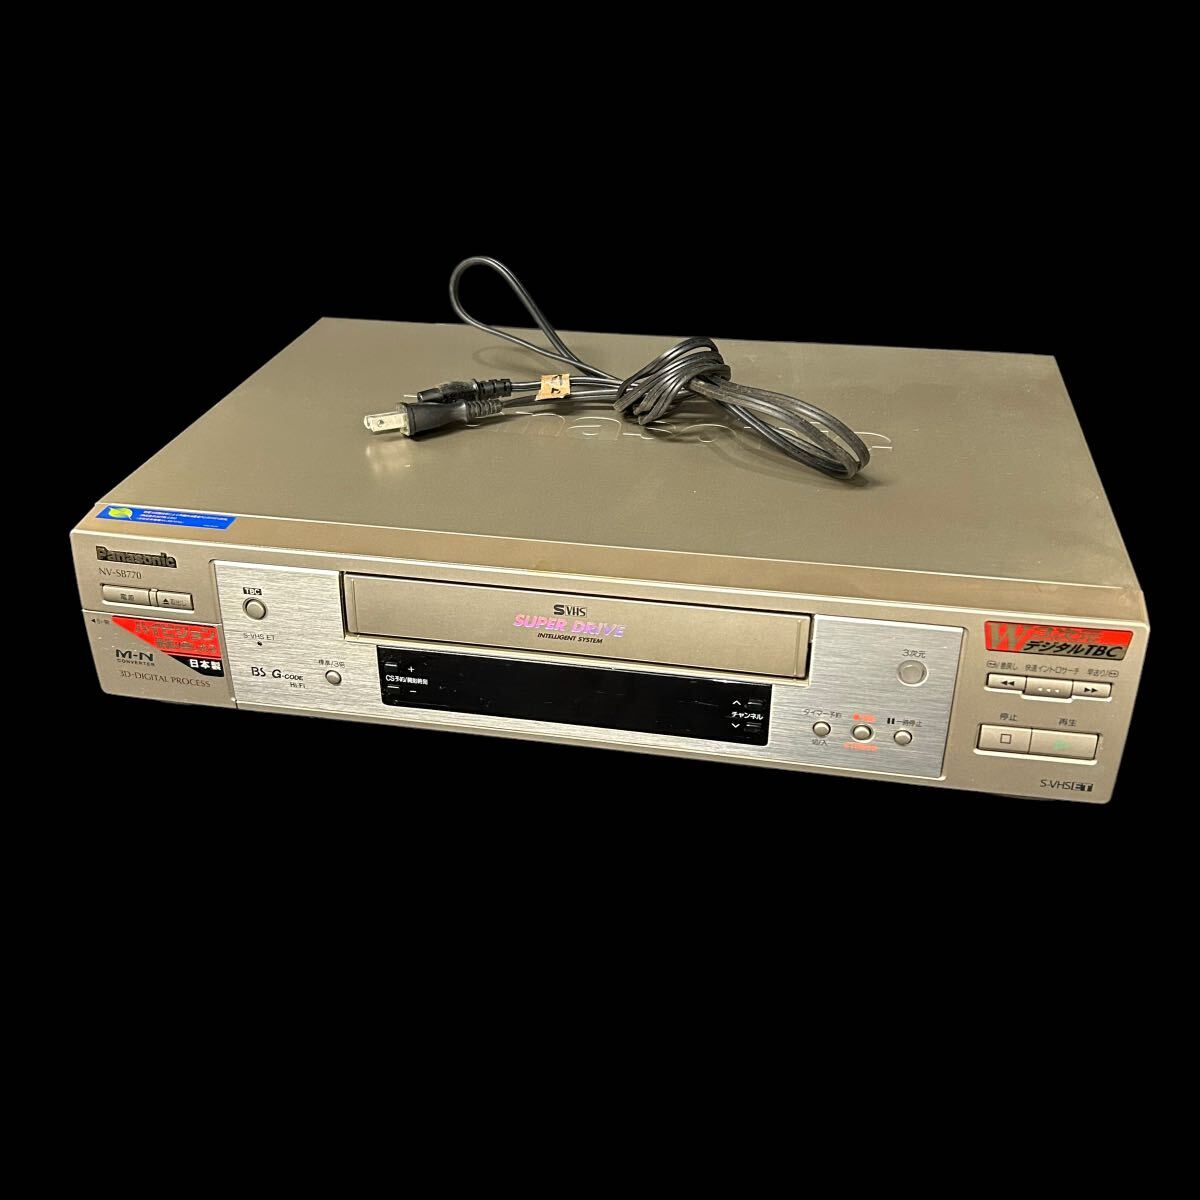 Panasonic パナソニック NV-SB770 ビデオデッキ S-VHS 98年製 3次元デジタル 映像機器 家庭用ビデオ 電源コード付_画像1